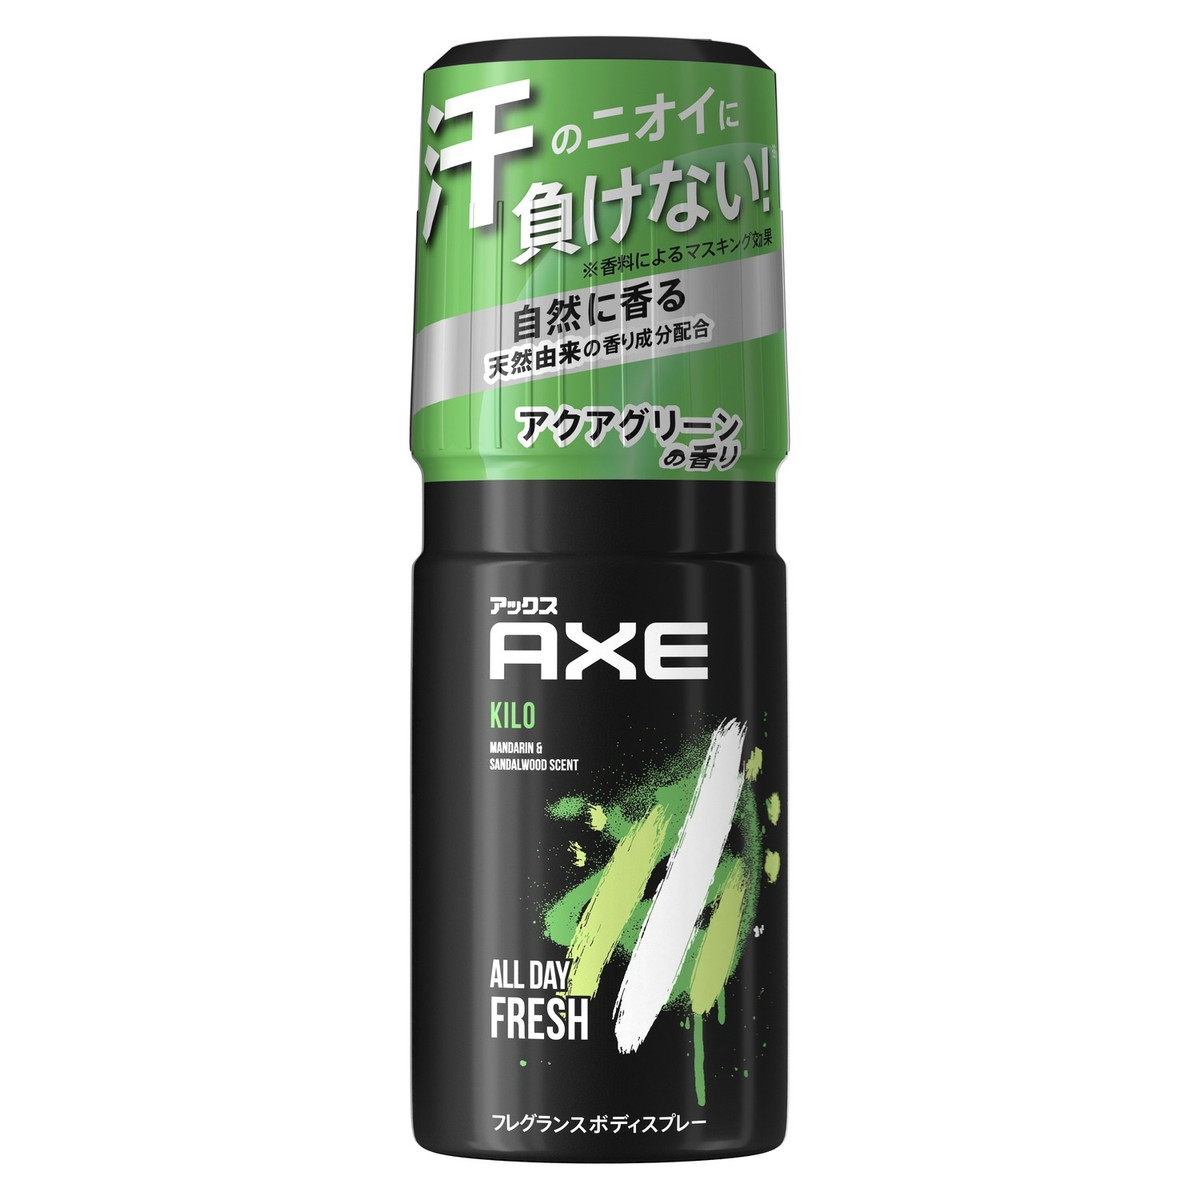 ユニリーバ AXE アックス フレグランスボディスプレー キロ 60g 澄んだアクアグリーンの香り